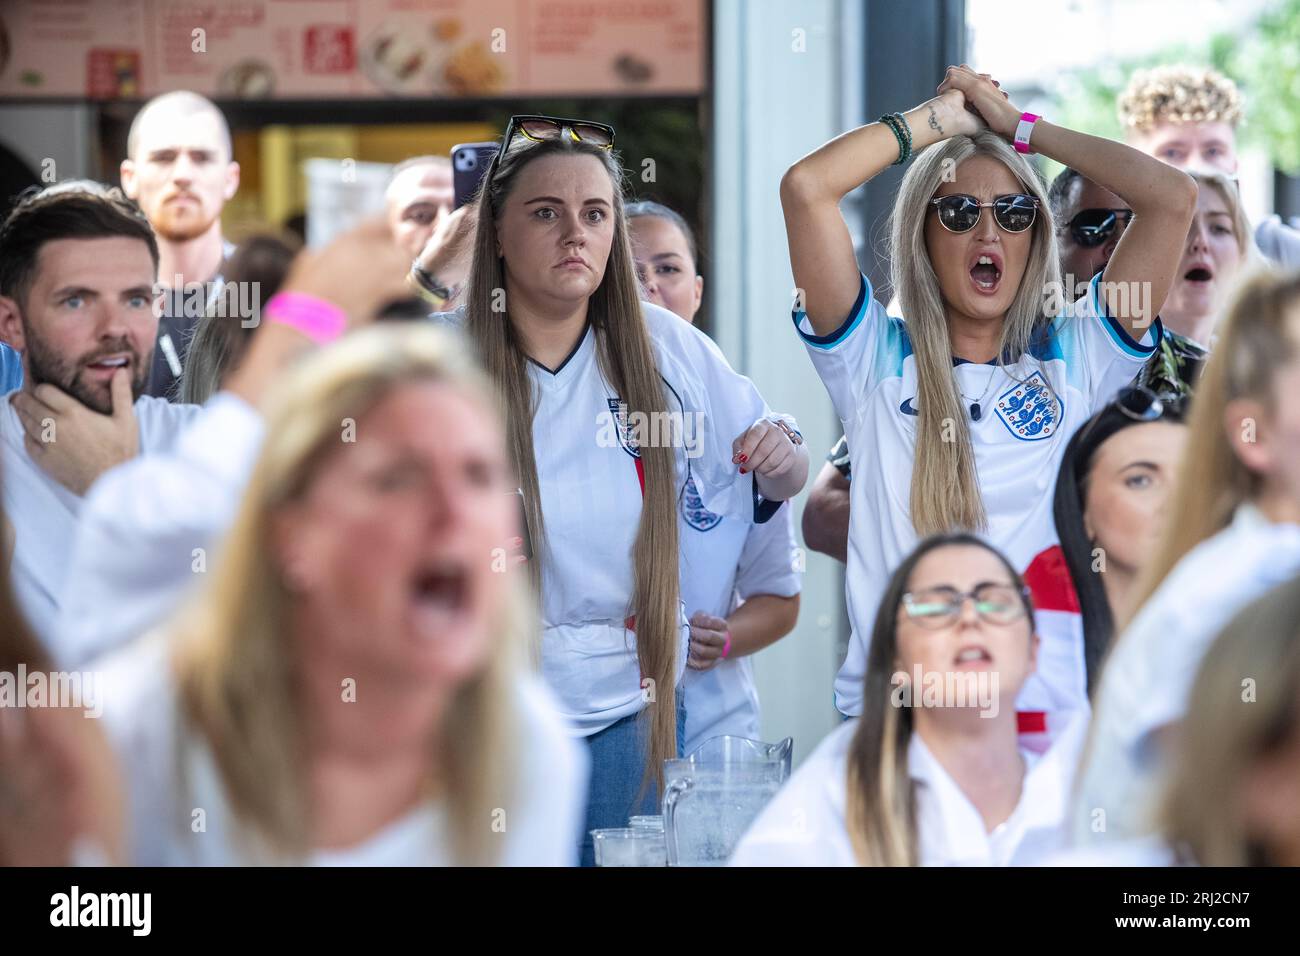 © Jeff Moore i tifosi di calcio dell'Inghilterra reagiscono al Boxpark di Shoreditch a Londra dopo che l'Inghilterra ha perso contro la Spagna nella finale della Coppa del mondo FIFA. Foto Stock